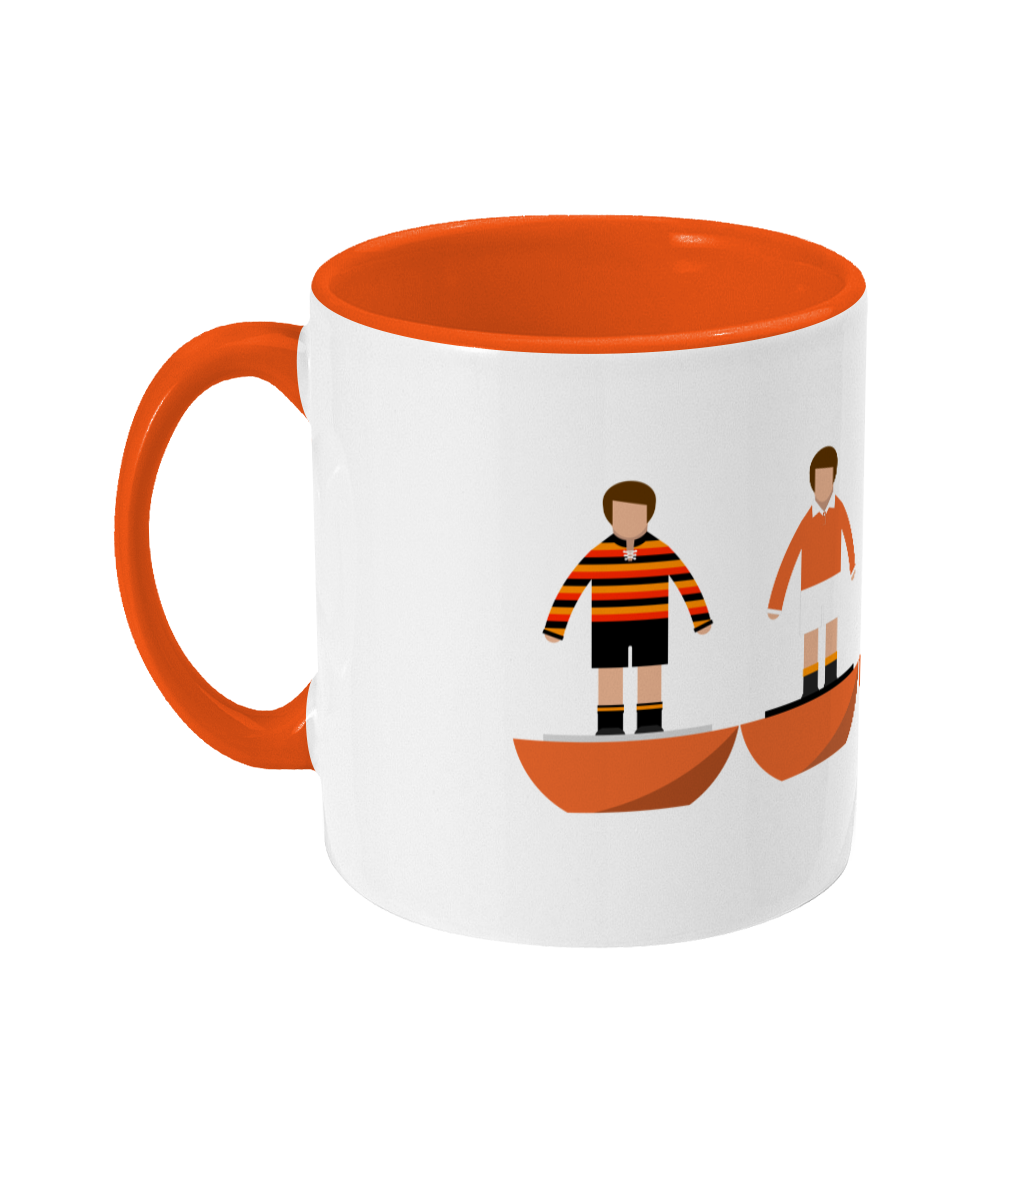 Football Kits 'Blackpool combined' Mug